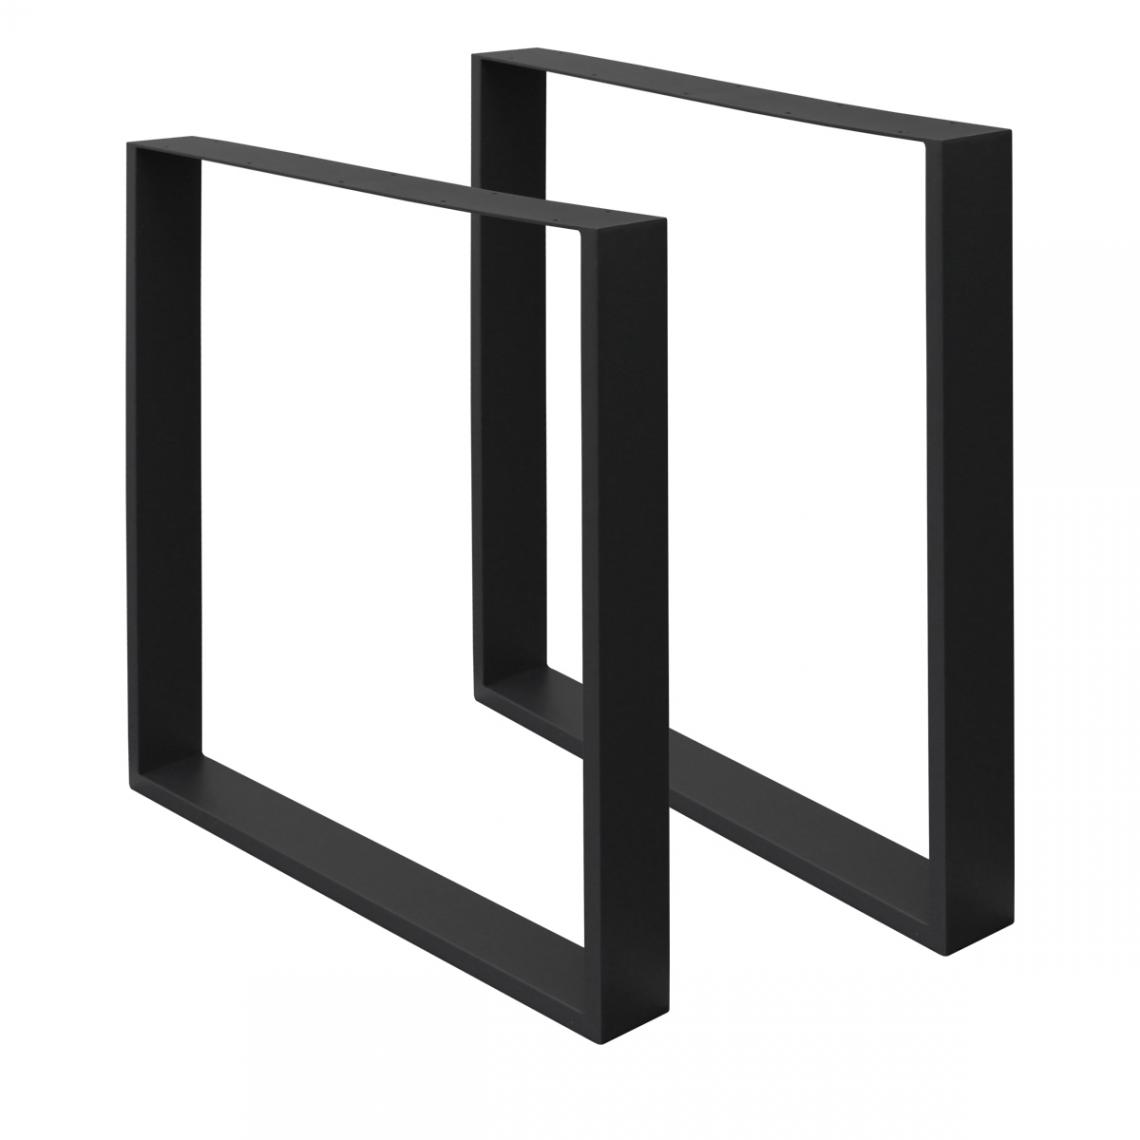 Ecd Germany - Set 2 pied de table acier noir 60 x 72 cm support rectangulaire style industriel - Pieds & roulettes pour meuble